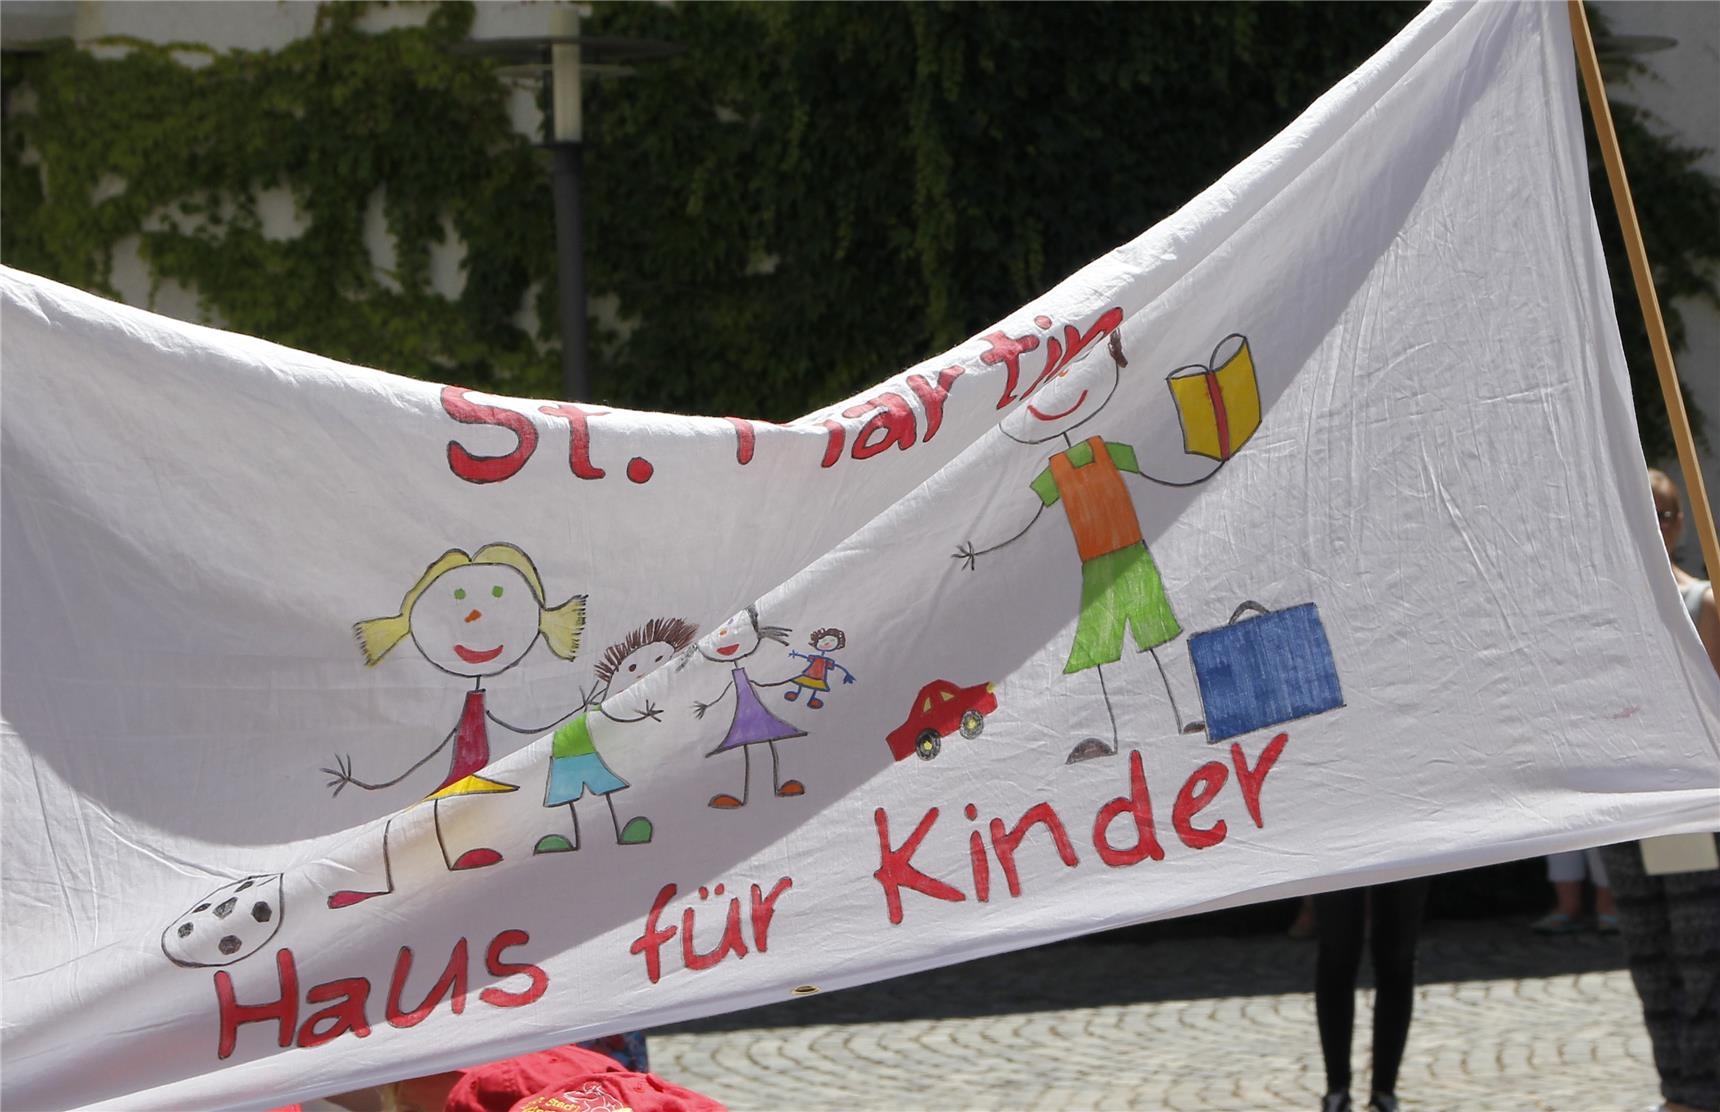 Der Katholische Kindergarten St. Martin aus Jettingen – Scheppach brachte seine Fahne mit. (Bernhard Gattner)